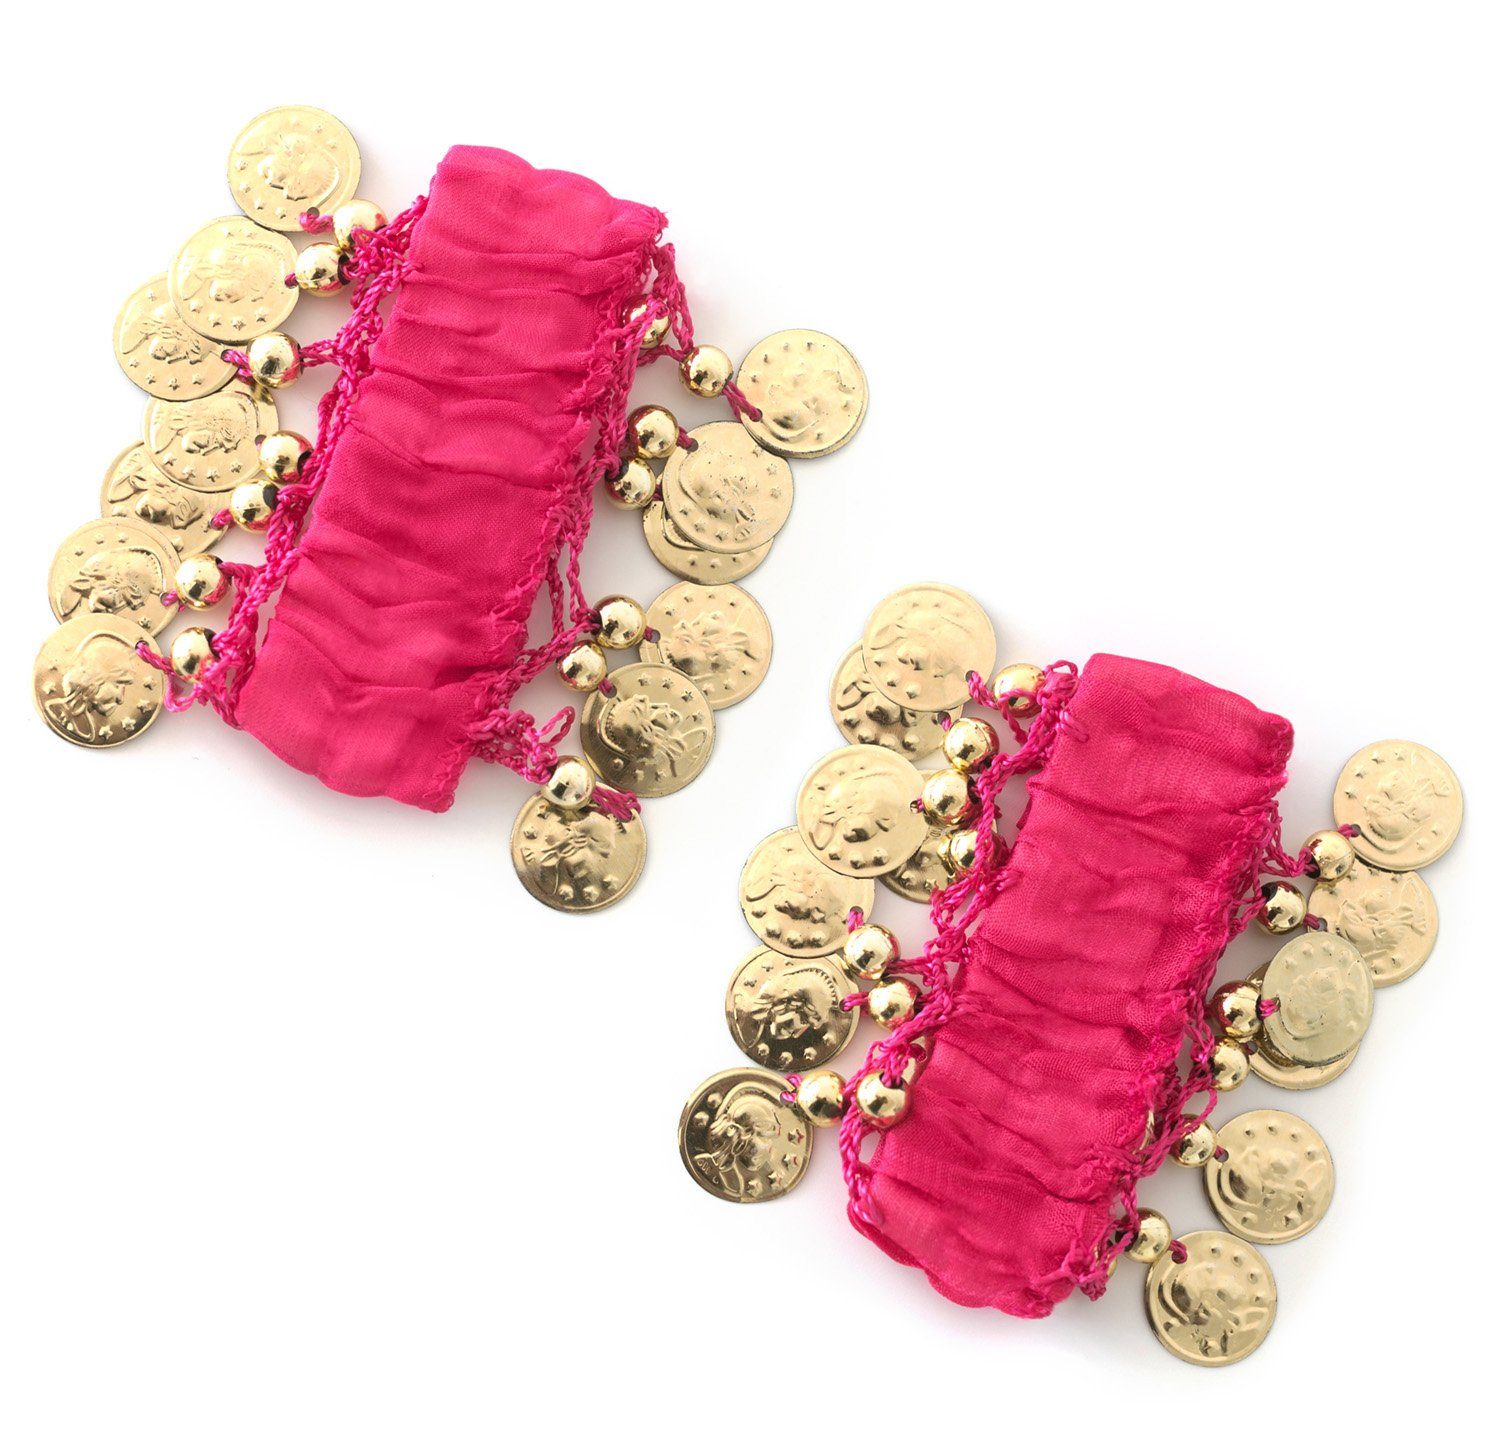 MyBeautyworld24 Armband Belly Dance Handkette (Paar) Fasching Armbänder pink